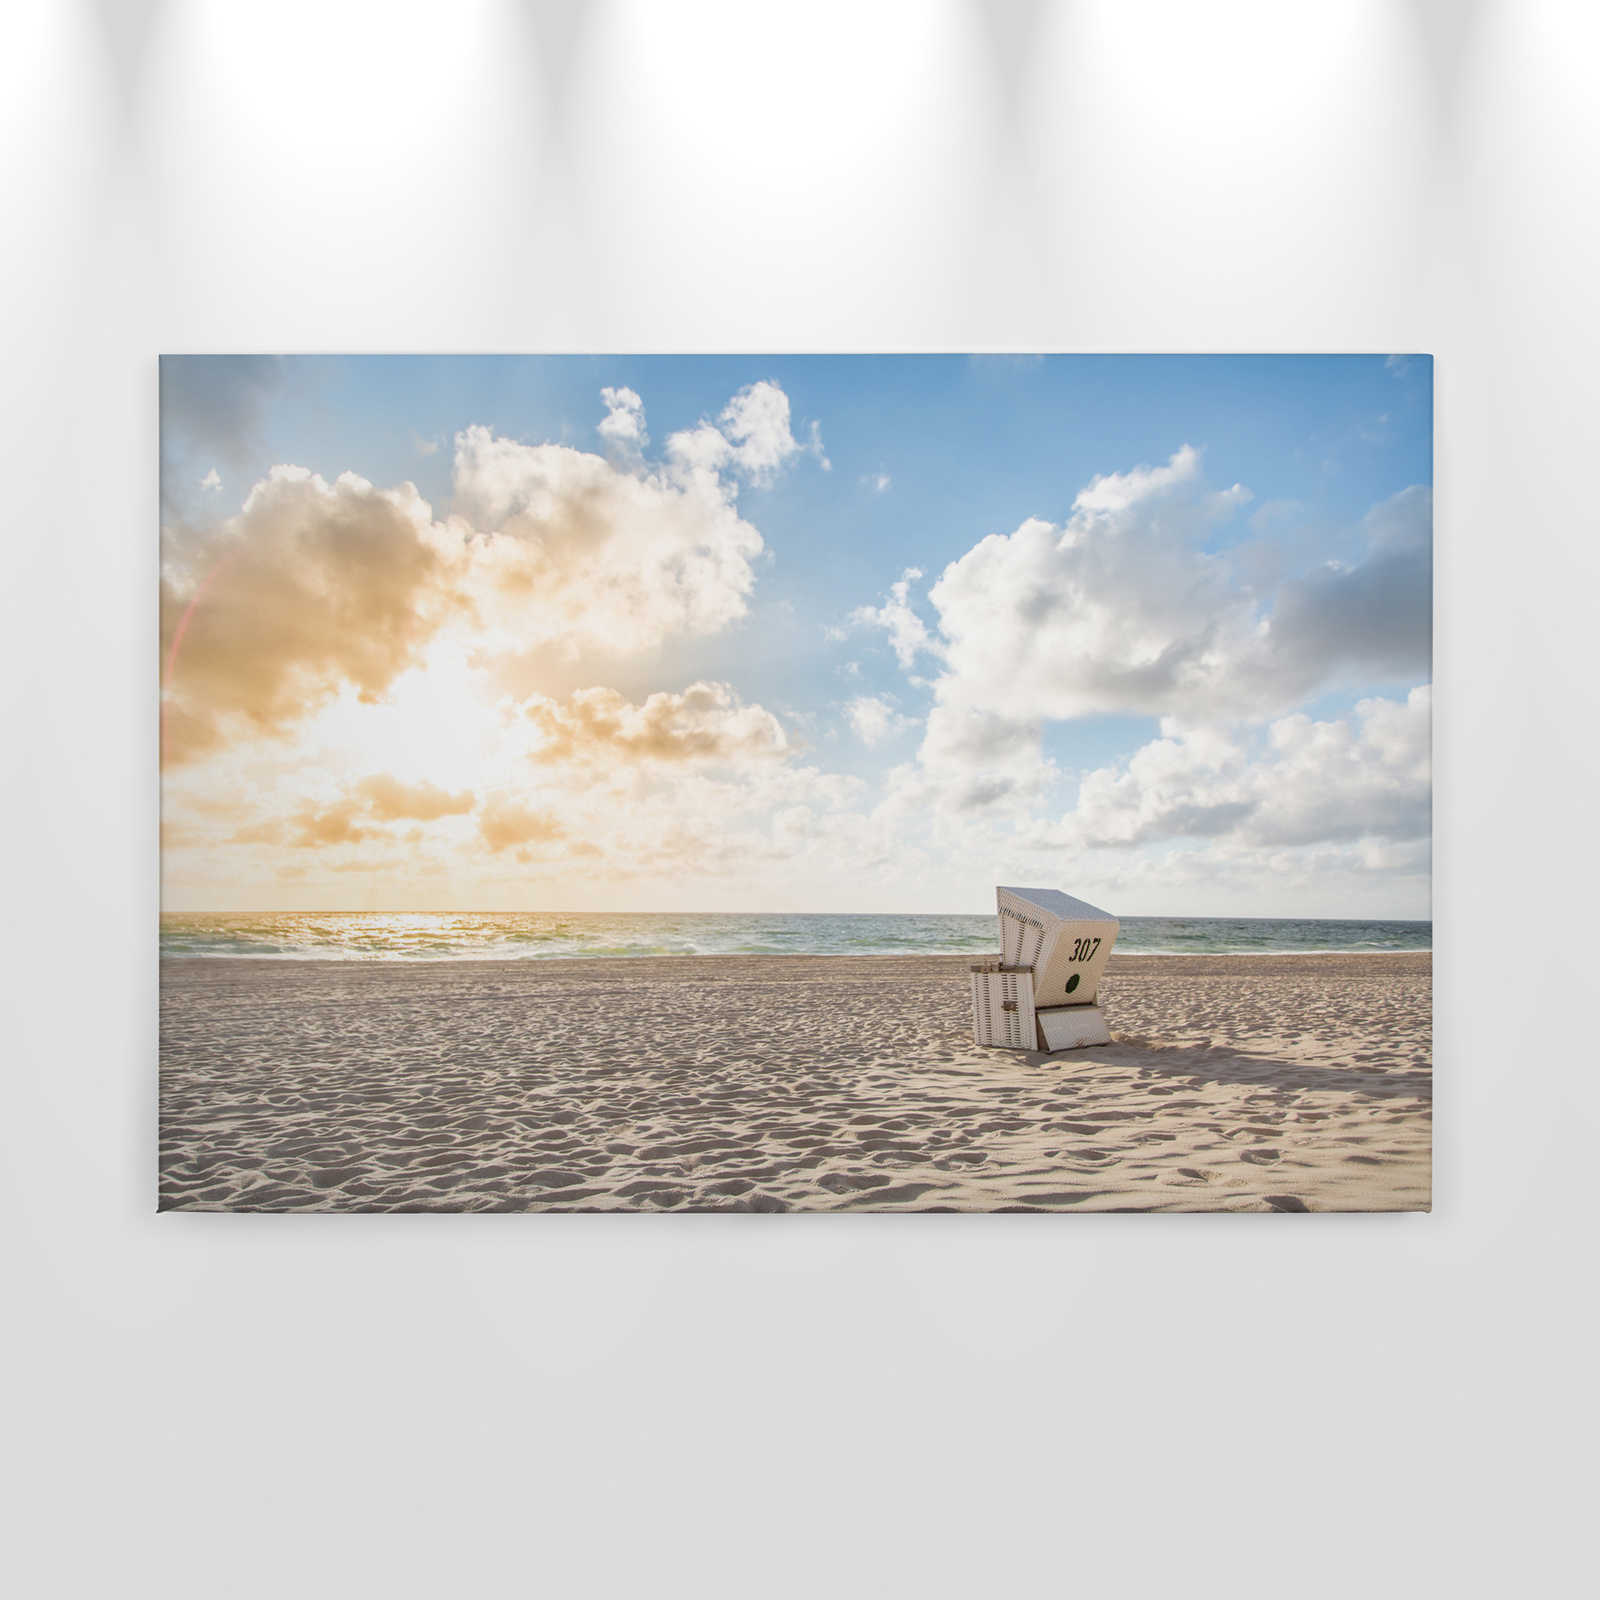             Lienzo con silla de playa al amanecer - 0,90 m x 0,60 m
        